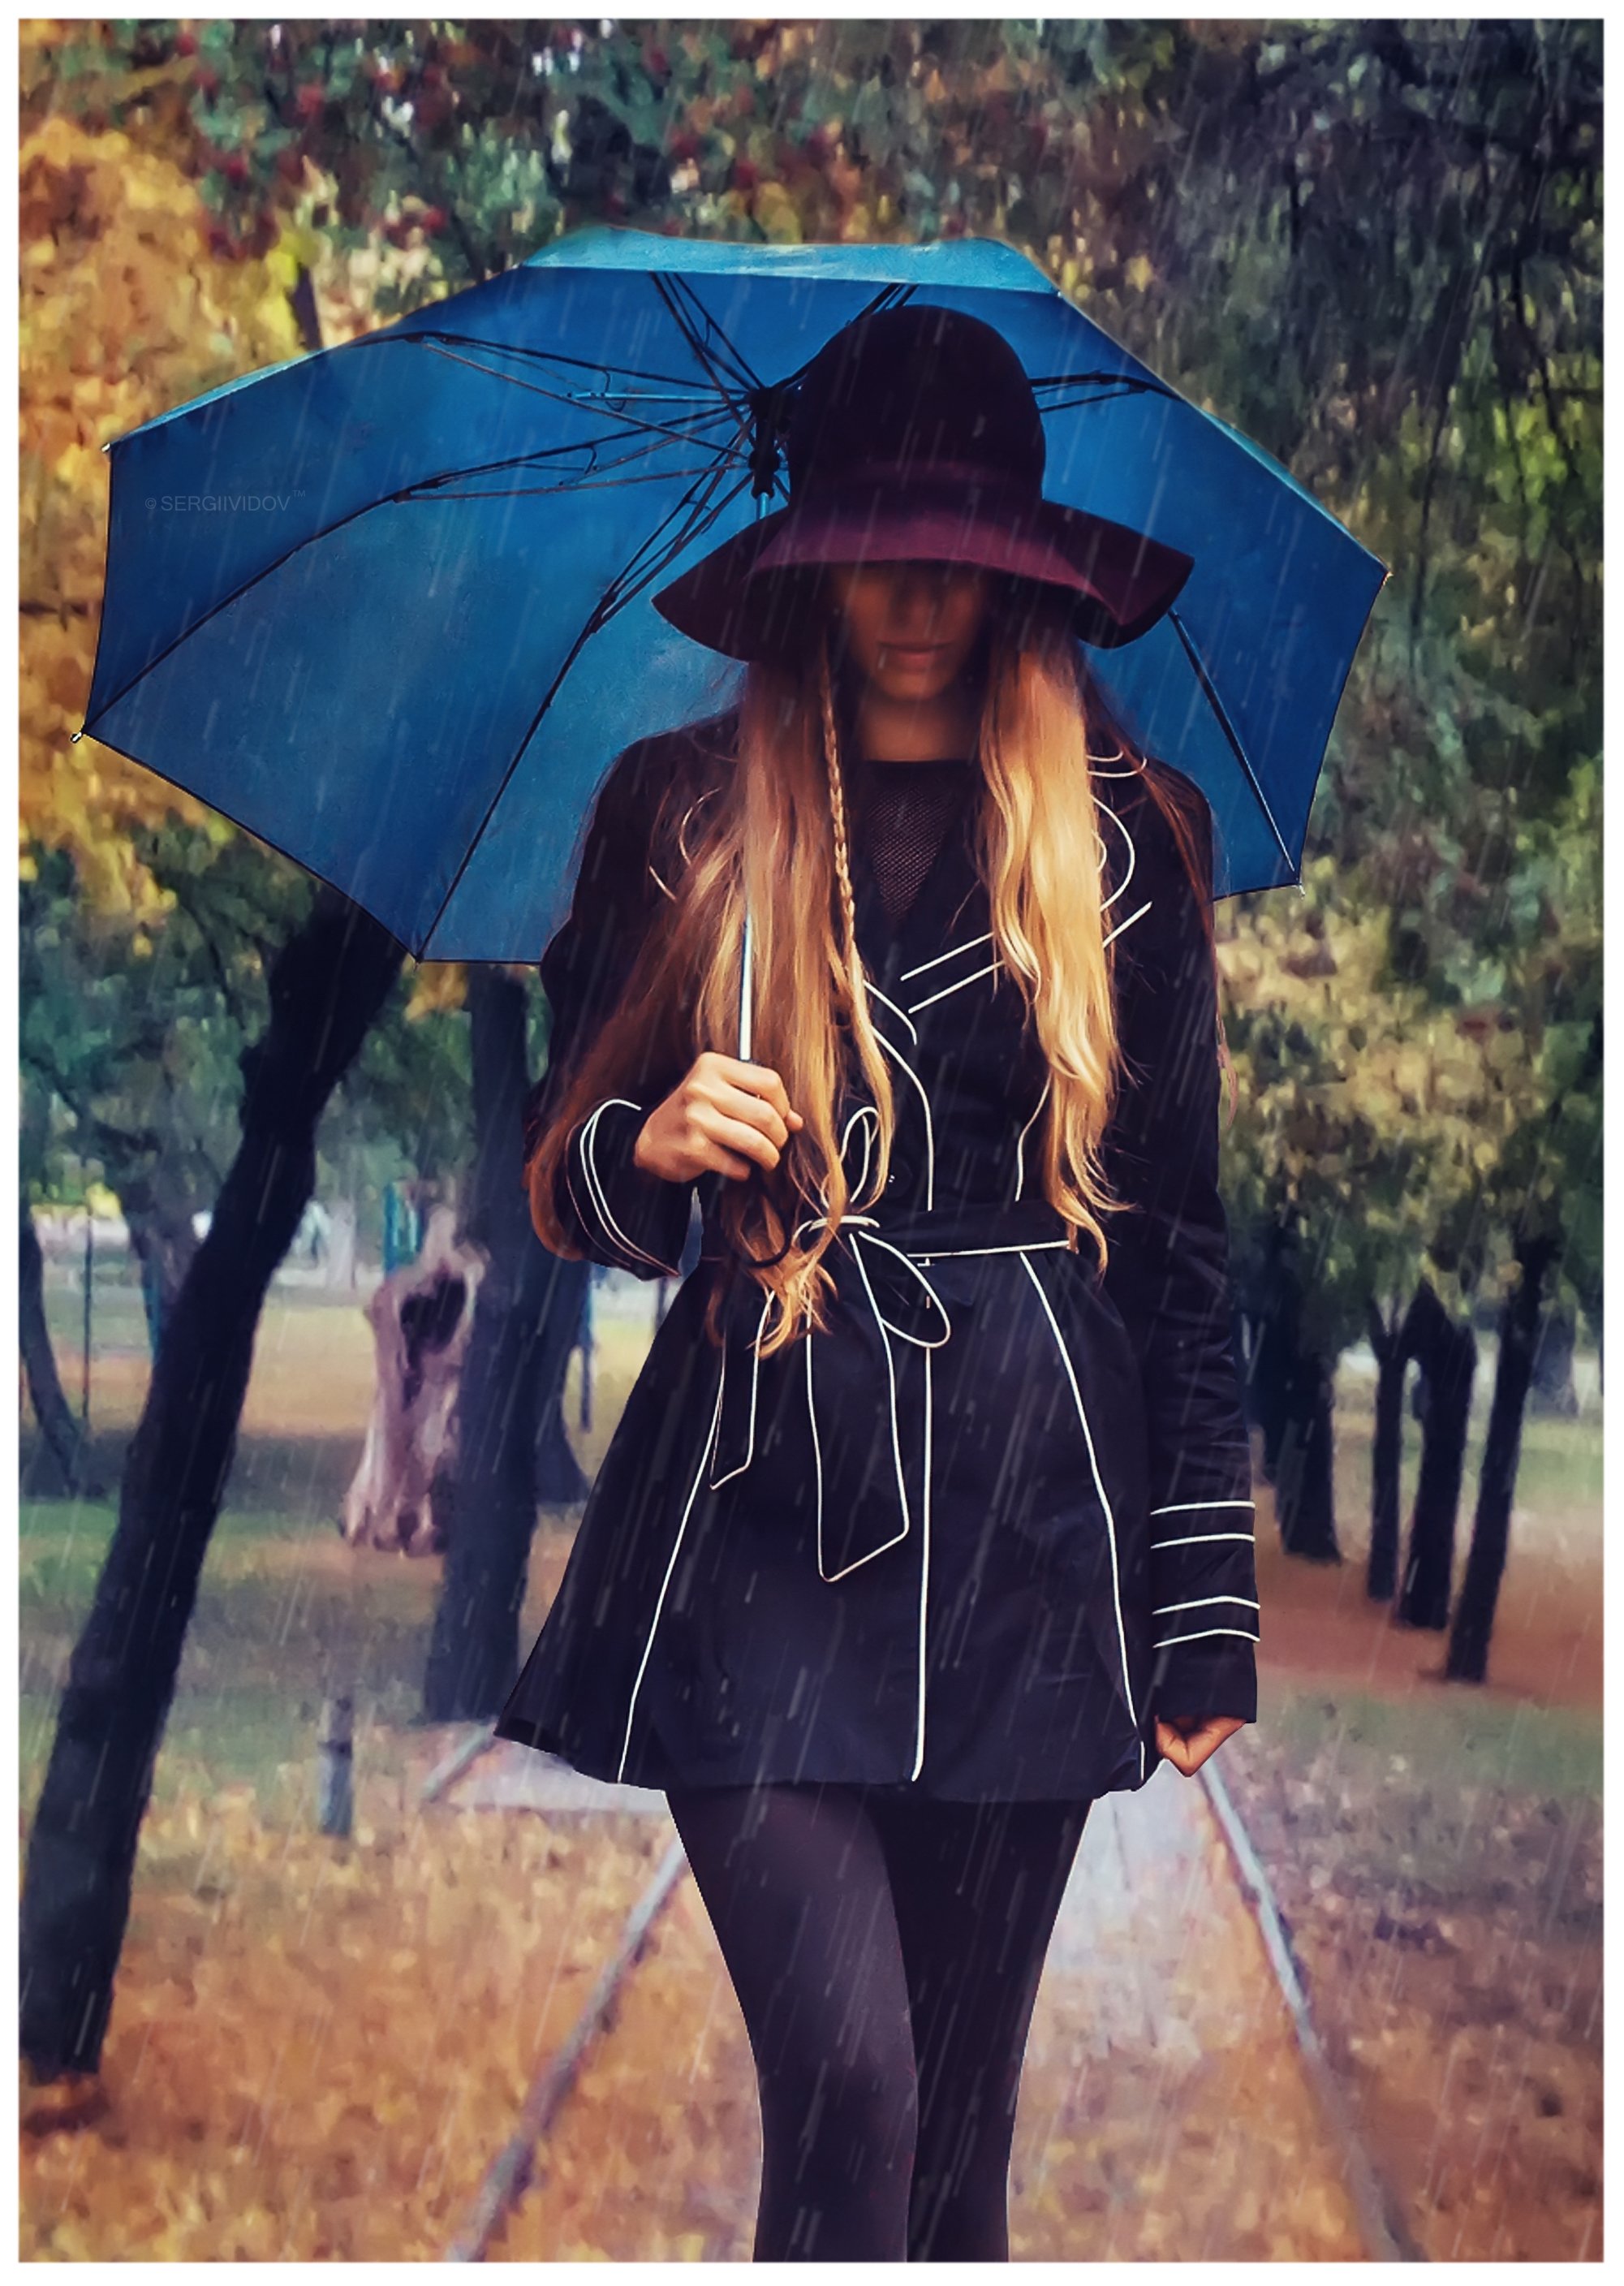 девушка, дождь, осень, парк, Sergii Vidov